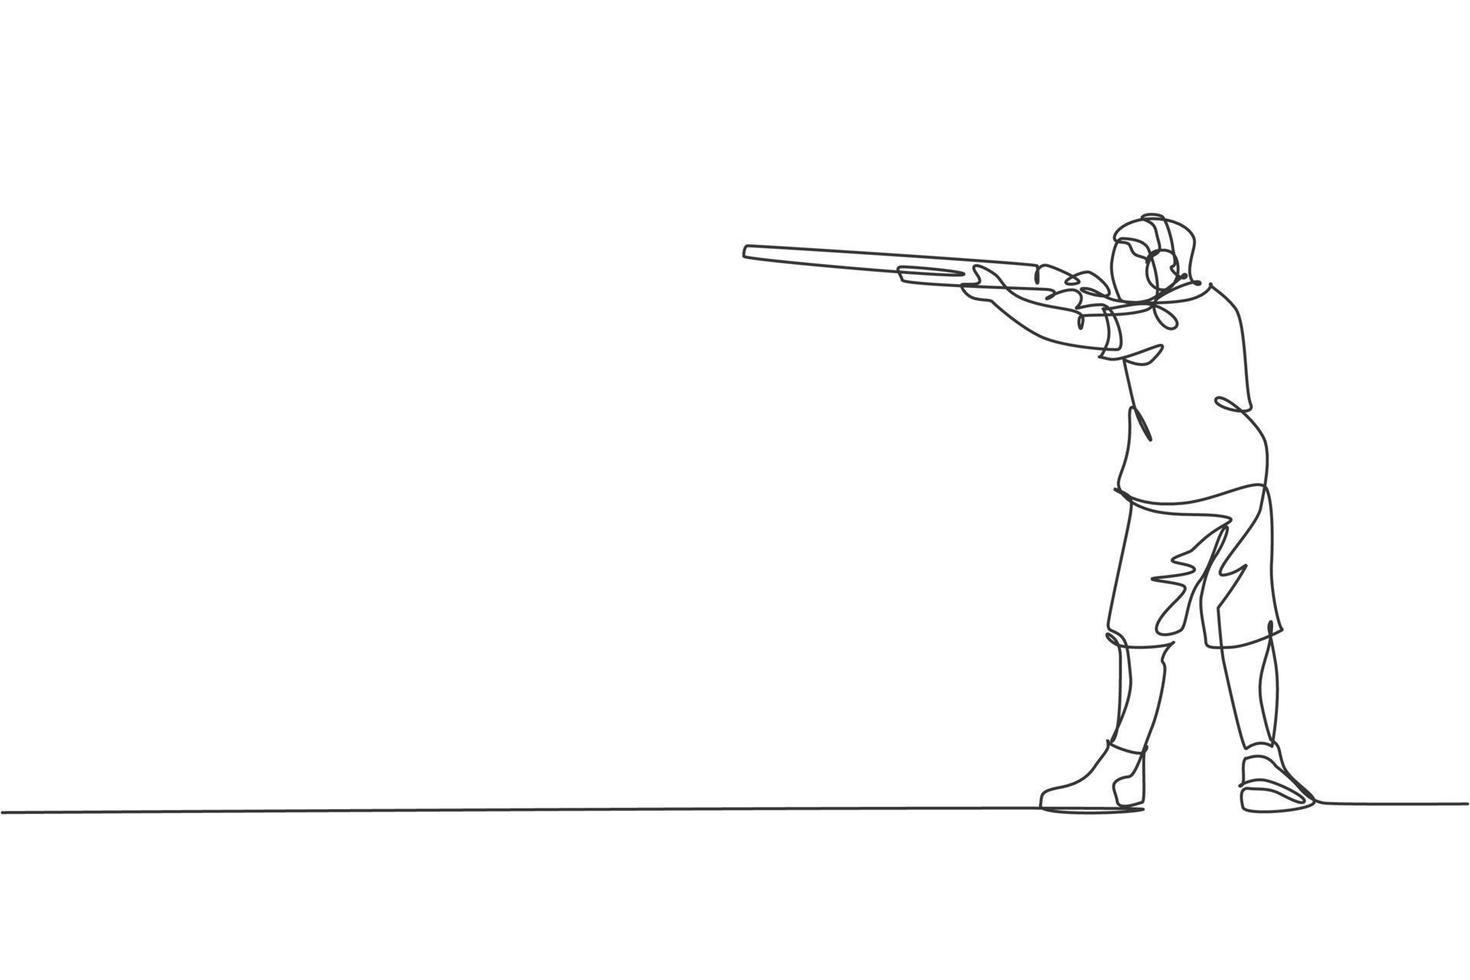 einzelne durchgehende Linienzeichnung eines jungen Sportlers, der eine Waffe hält und trainiert, um taktisches Zielschießen zu erreichen. Schießsport-Trainingskonzept. trendige einzeilige zeichnen design-vektorillustration vektor